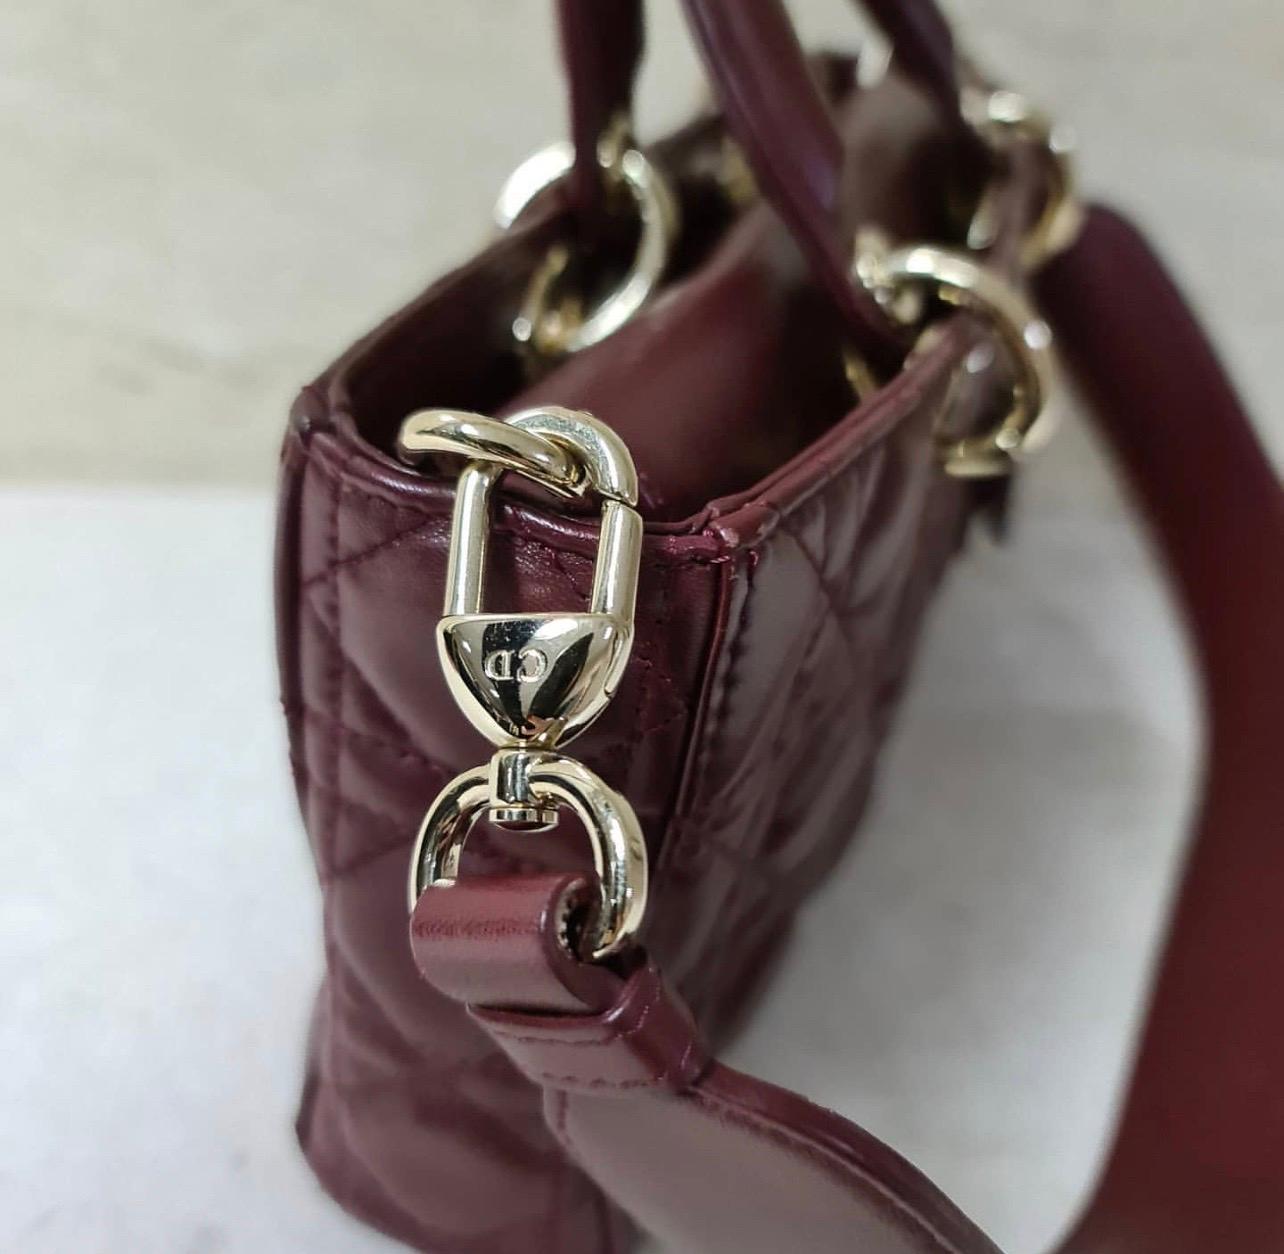 Black Christian Dior Lady Dior 2016 Burgundy Rectangular Leather Bag